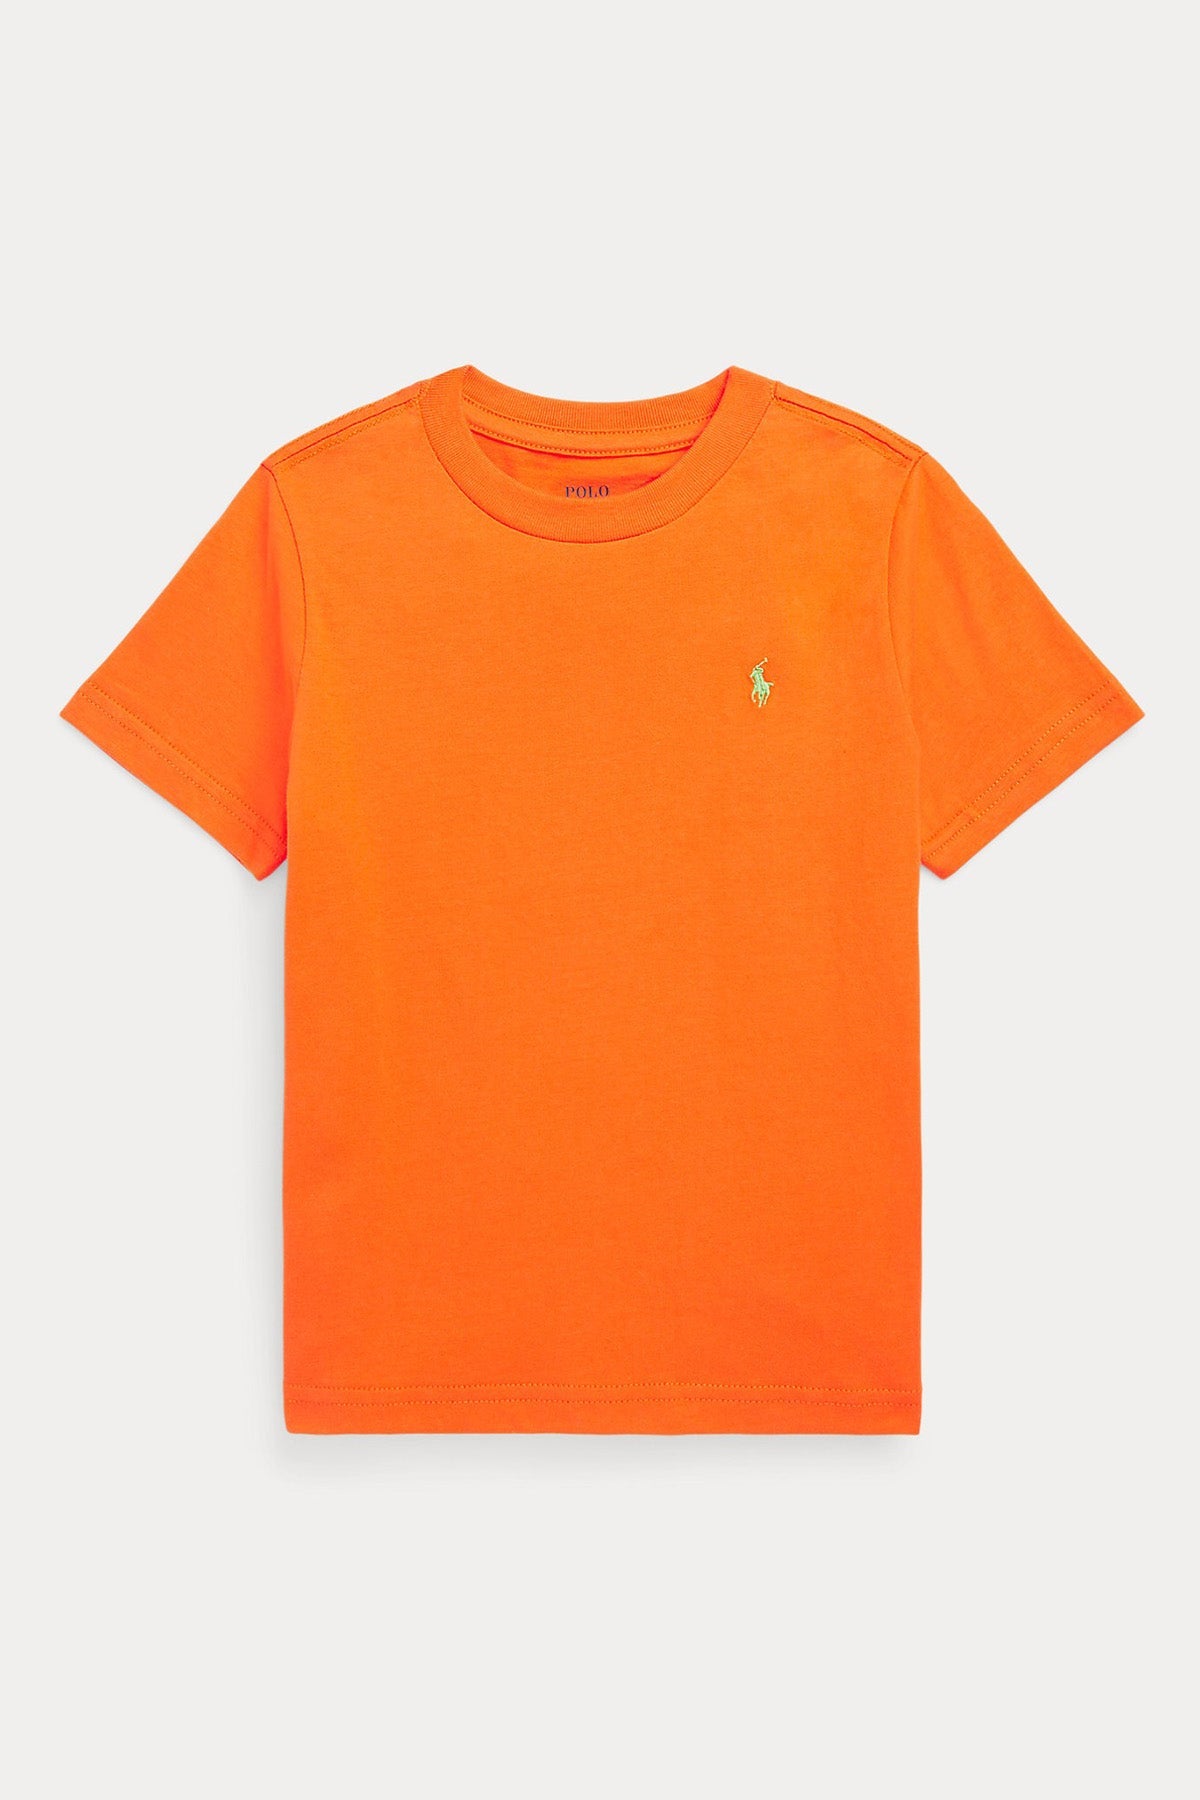 Polo Ralph Lauren Kids 5-6 Yaş Unisex Çocuk Yuvarlak Yaka T-shirt